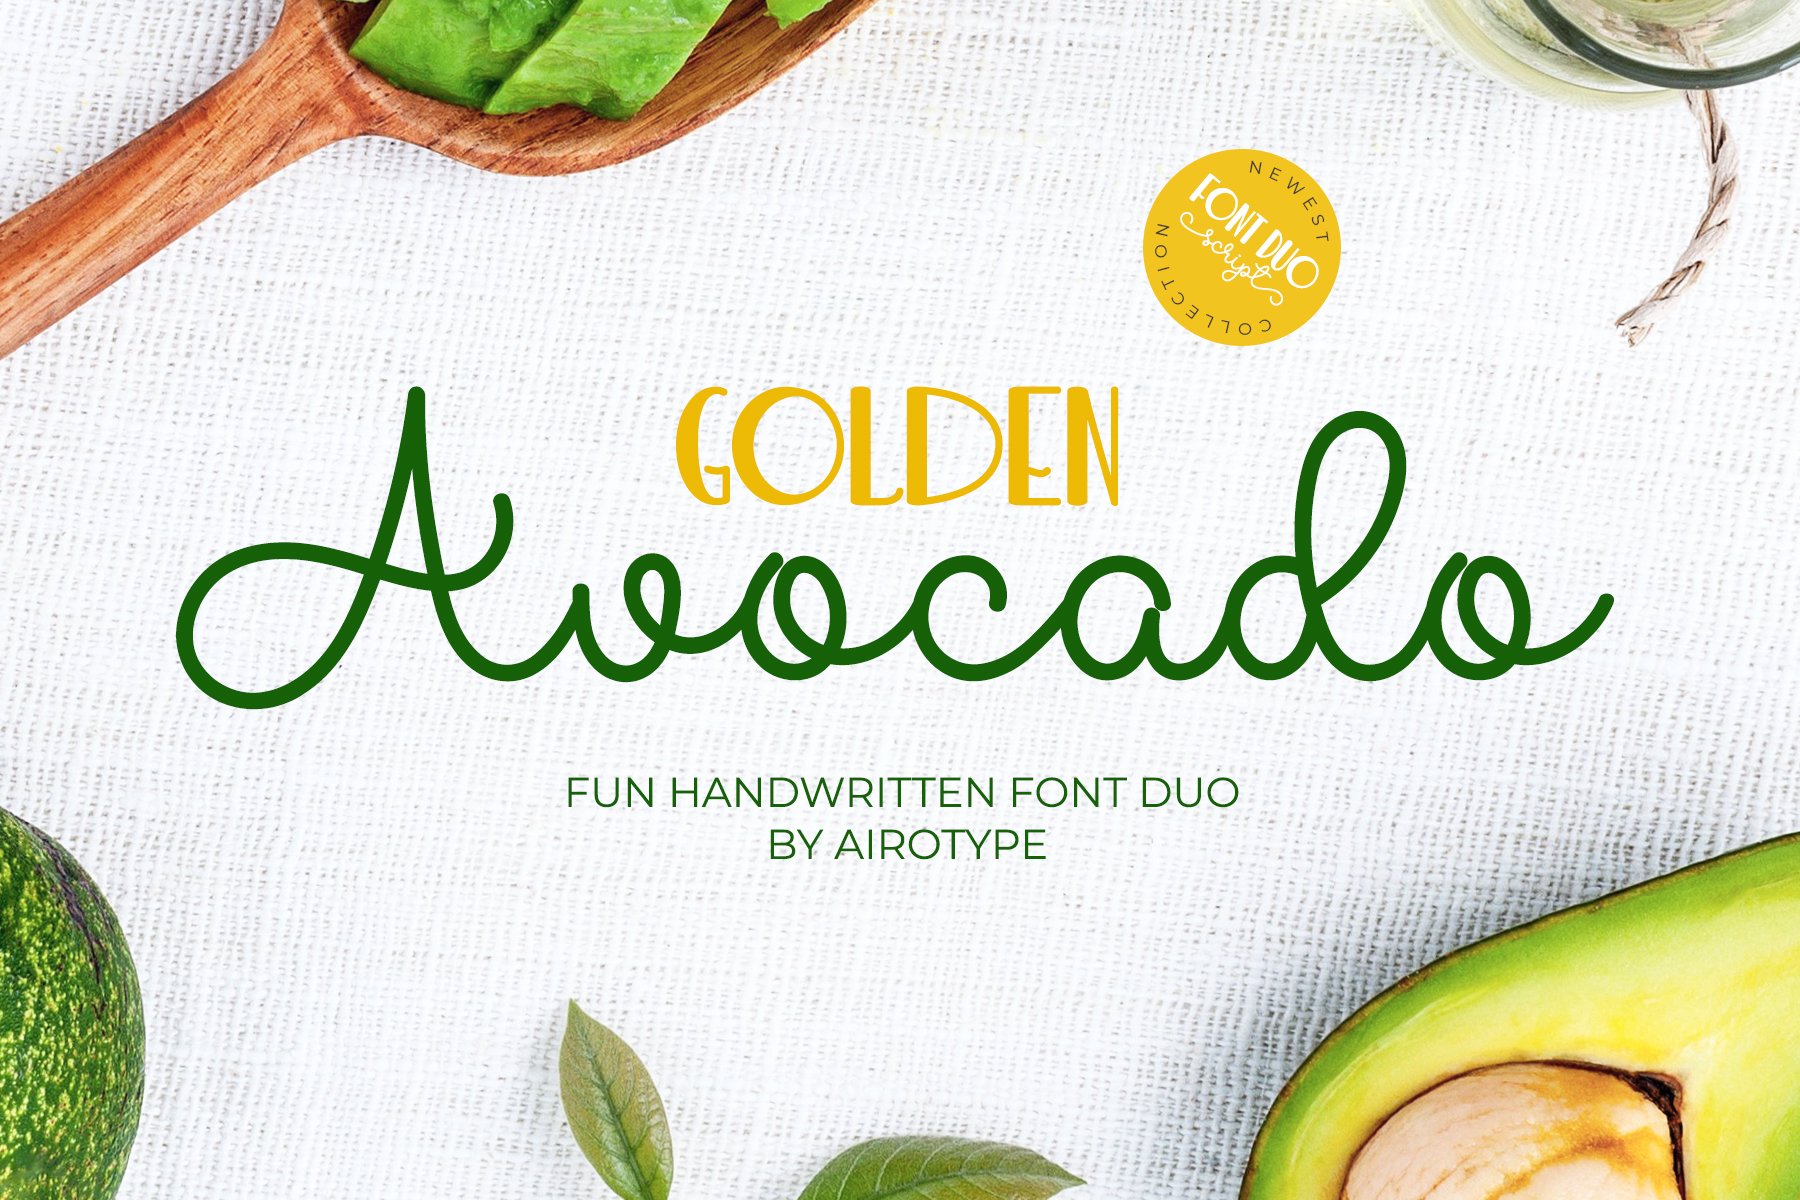 Golden Avocado - Fun Font Duo cover image.